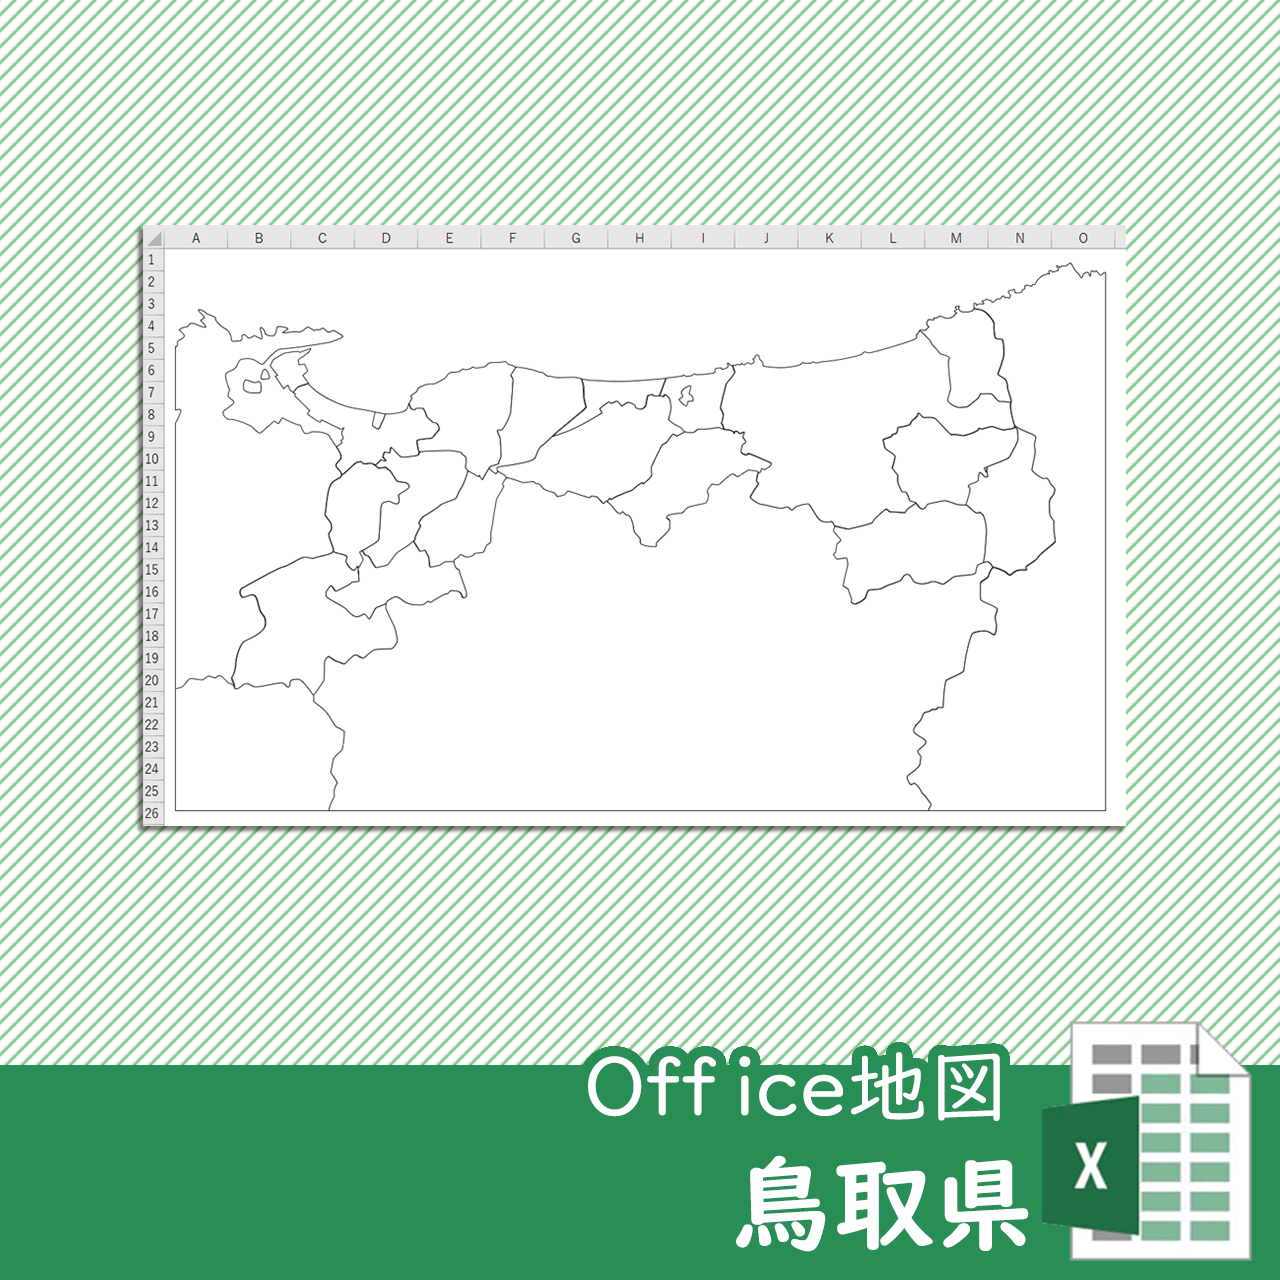 鳥取県のOffice地図のサムネイル